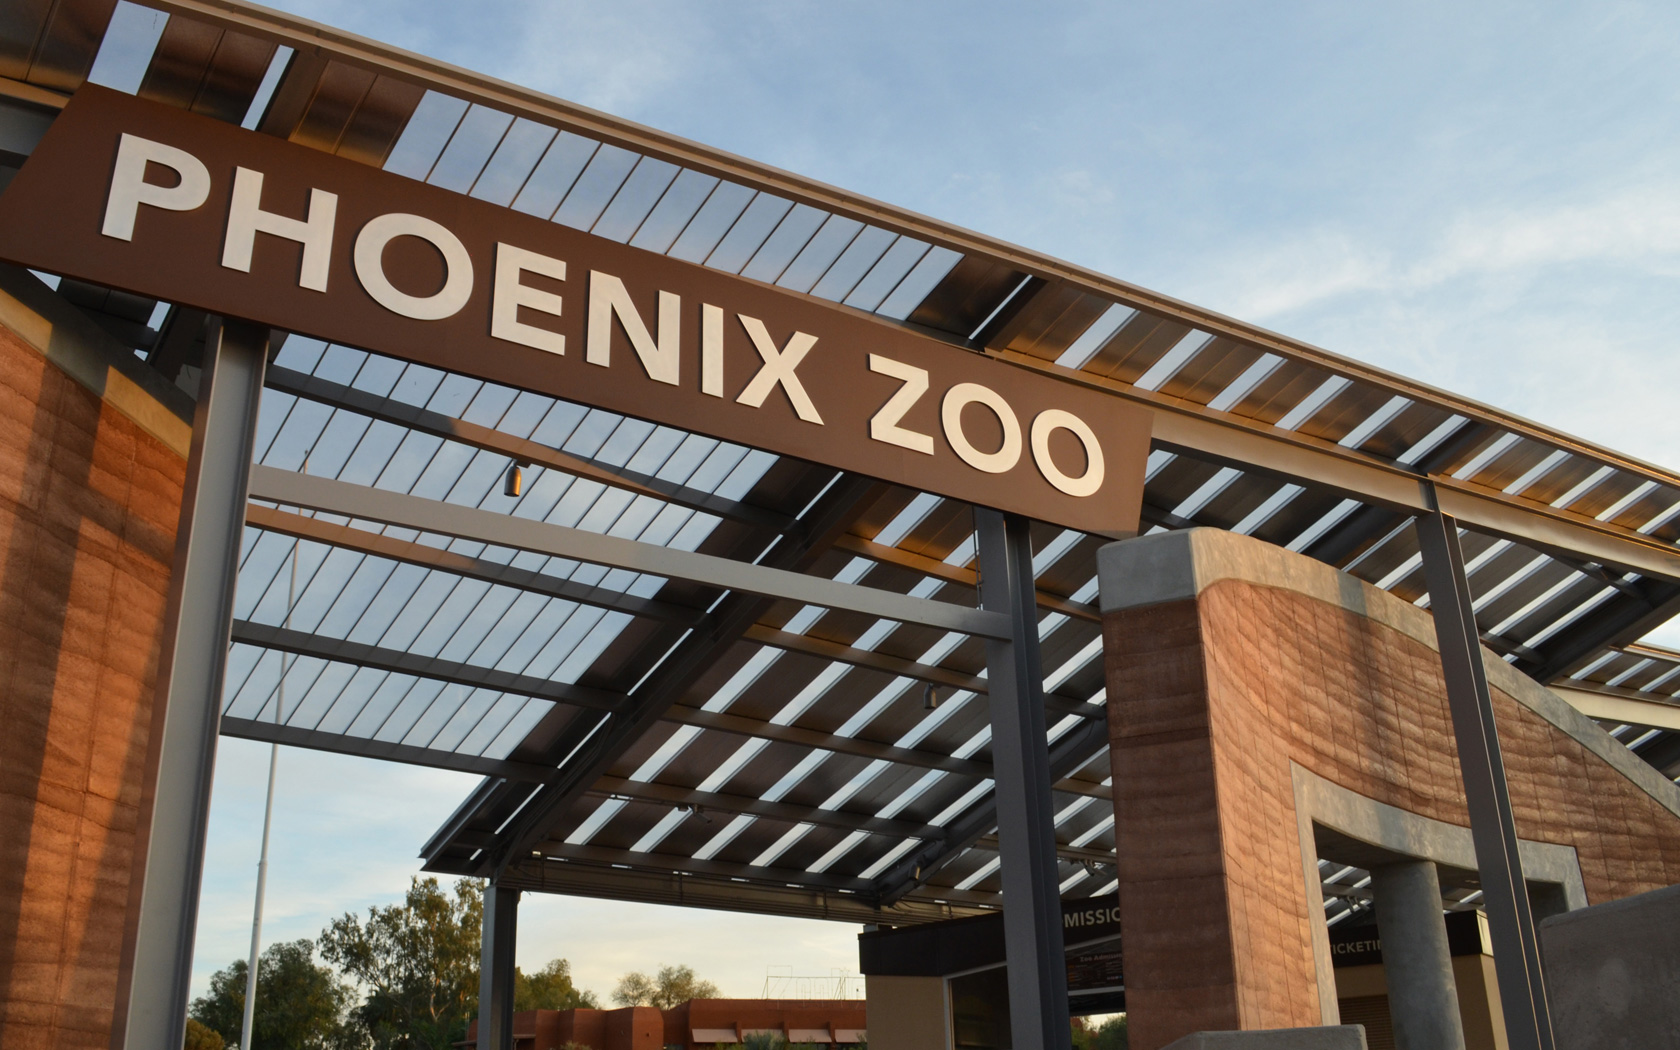 The Phoenix Zoo